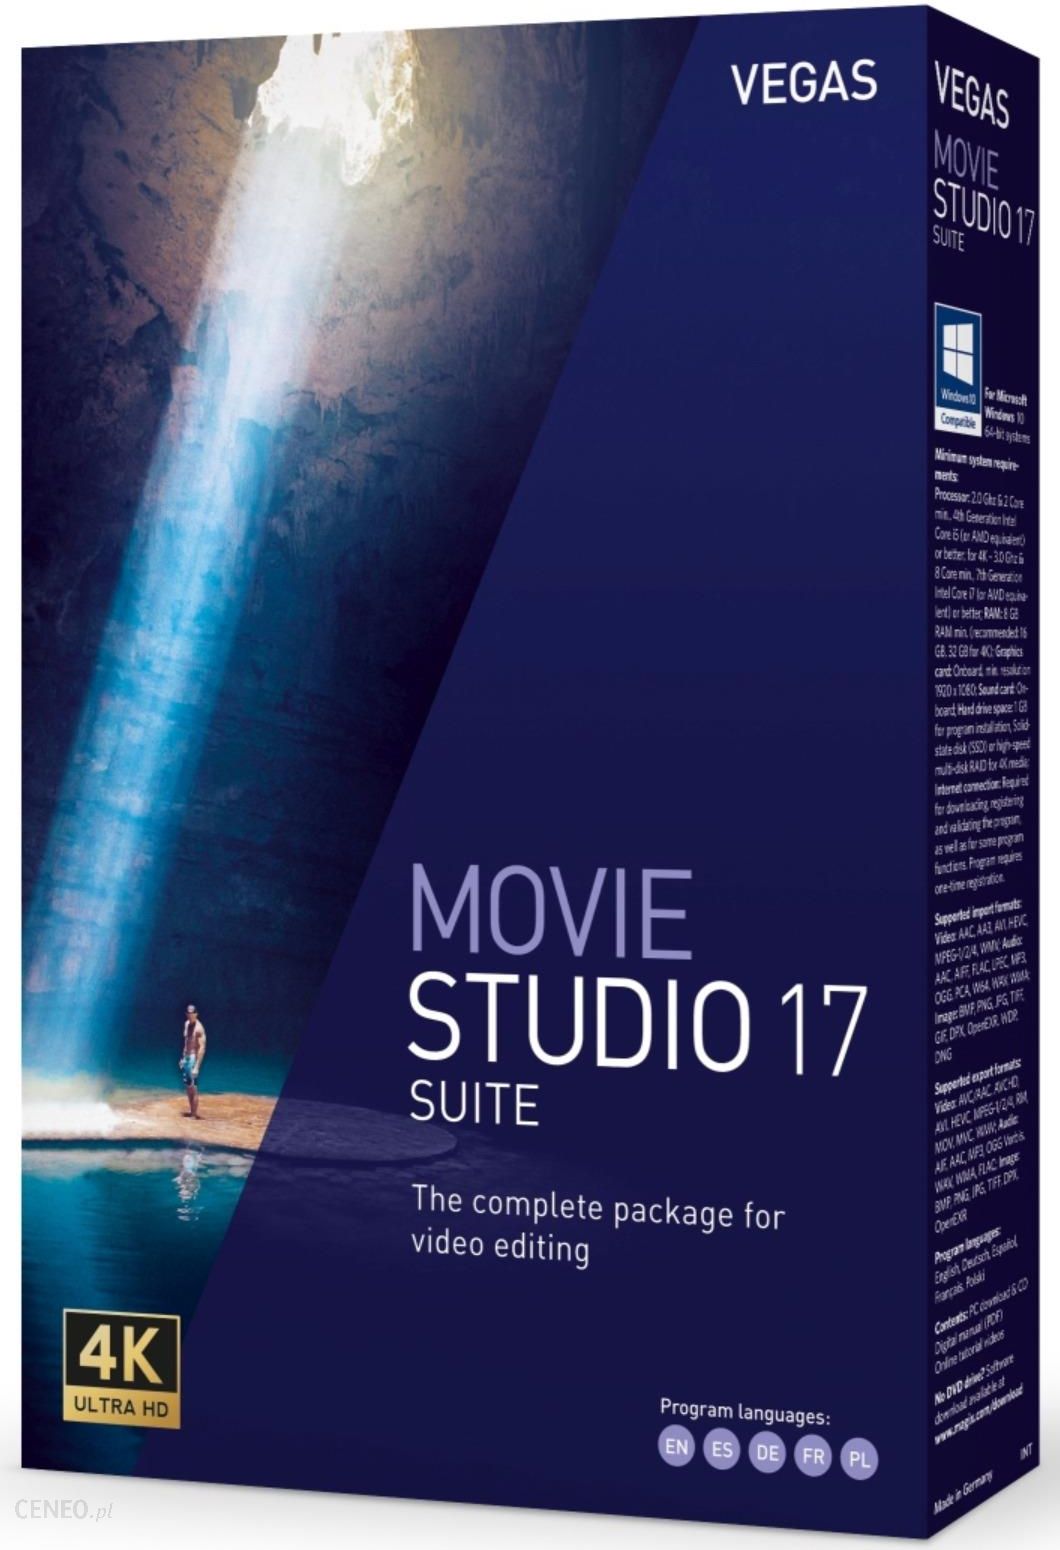 magix vegas movie studio 17